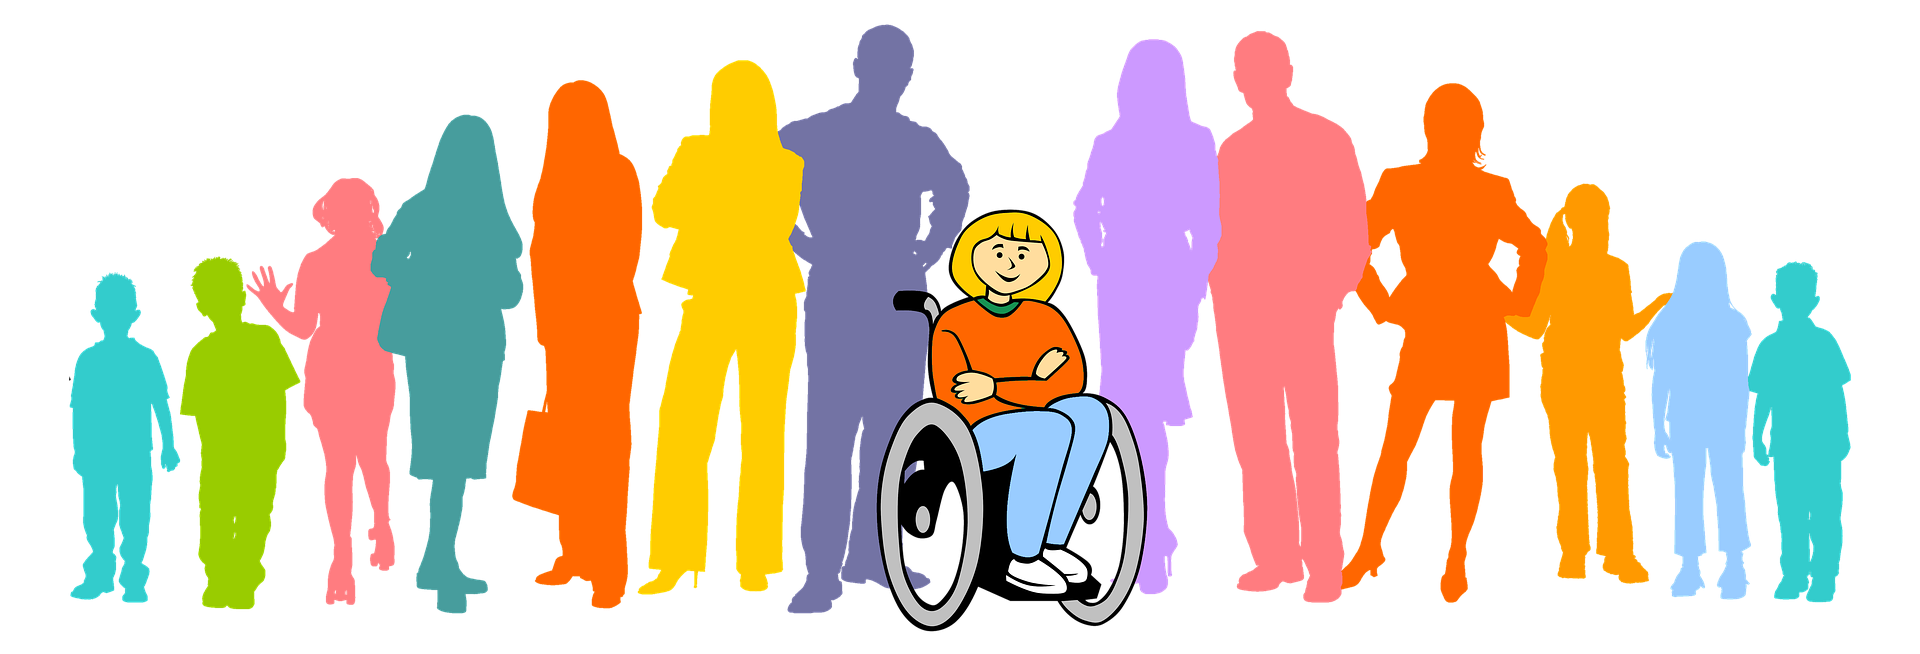 Люди с ограниченными возможностями картинки. Социализация людей с инвалидностью. Люди с ОВЗ. Общество инвалидов. Представитель группы инвалидов